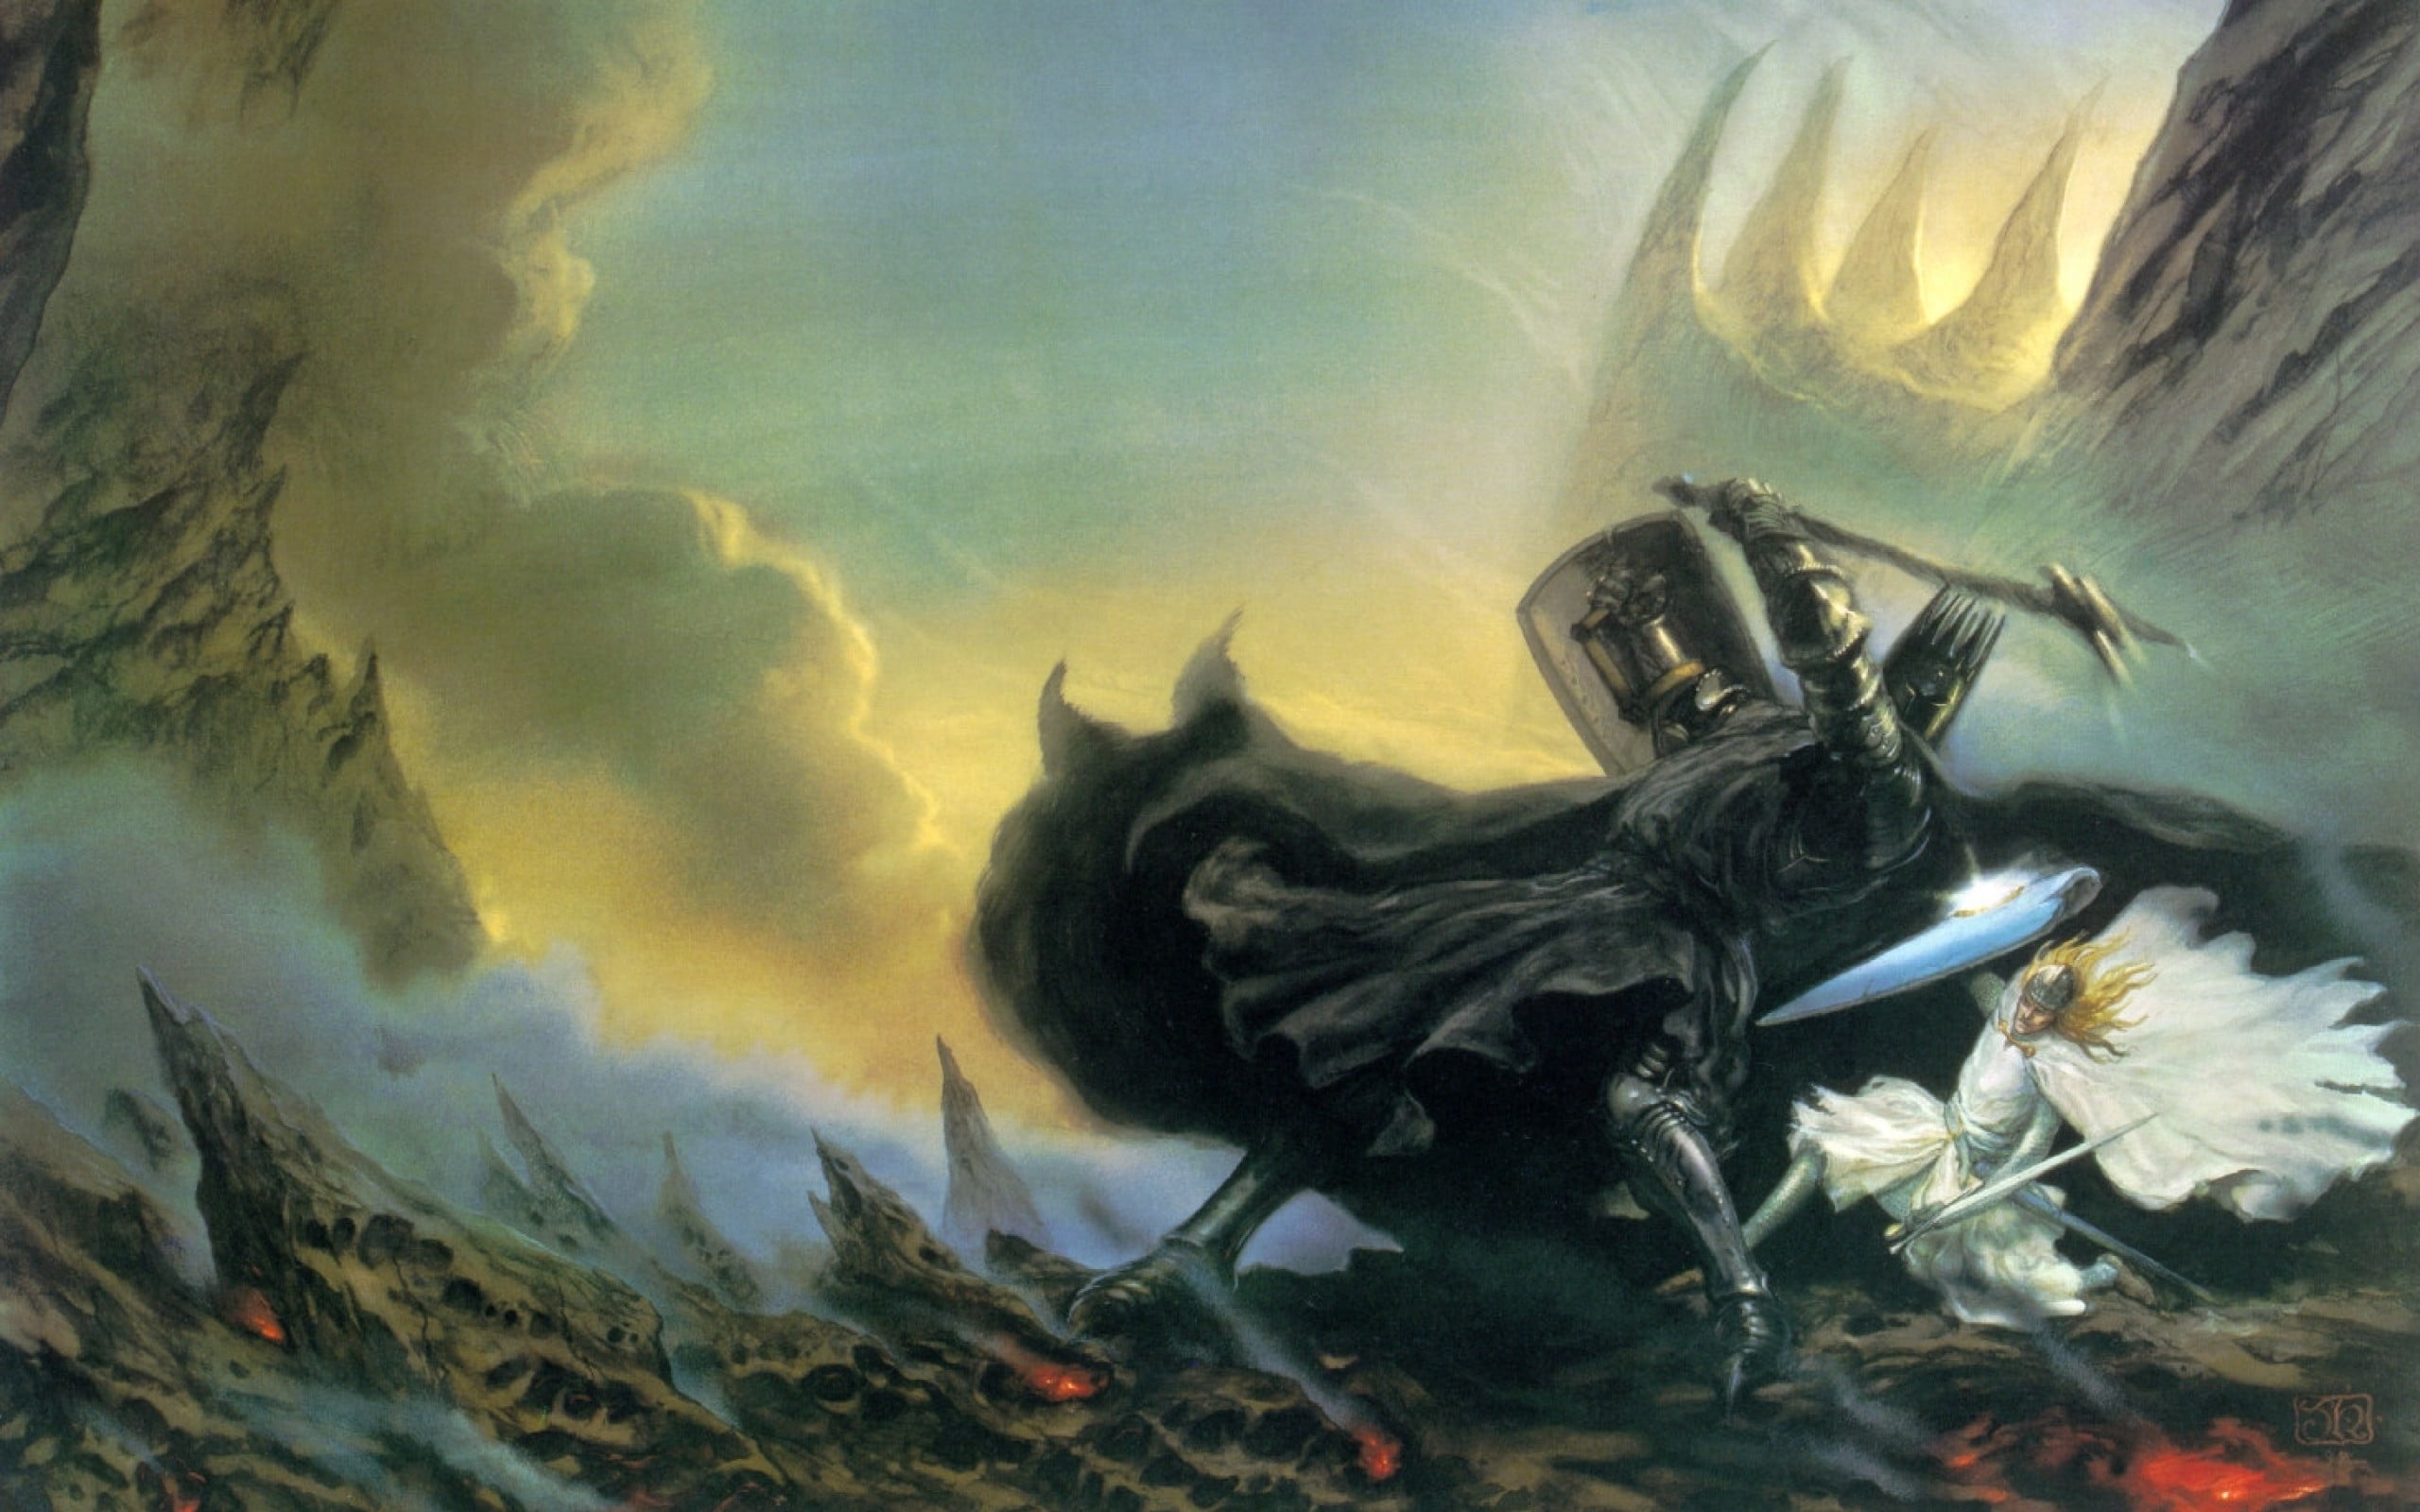 dark knight and light knight painting, J. R. R. Tolkien, The Silmarillion, artwork...